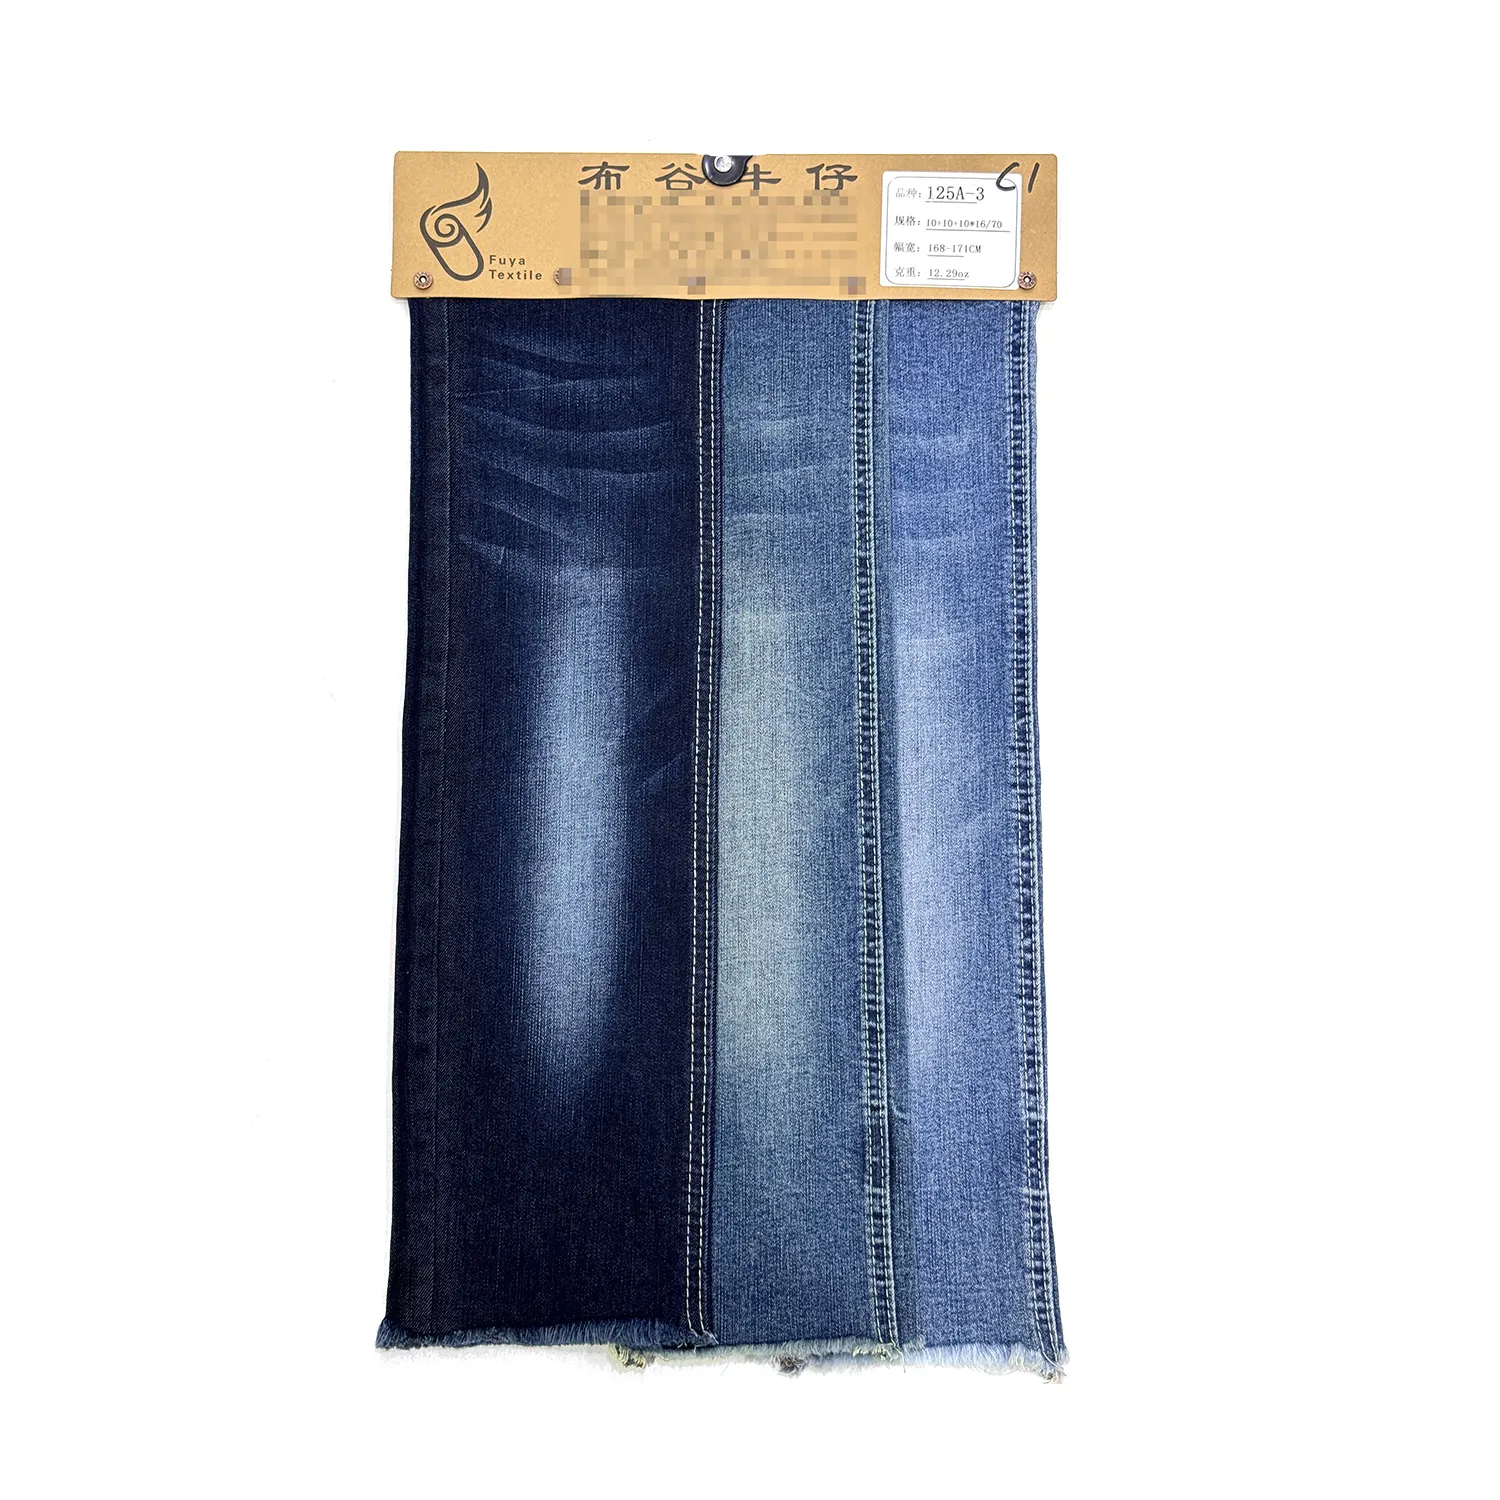 9.84 oz rol kain baku jeans regang kain denim spandeks